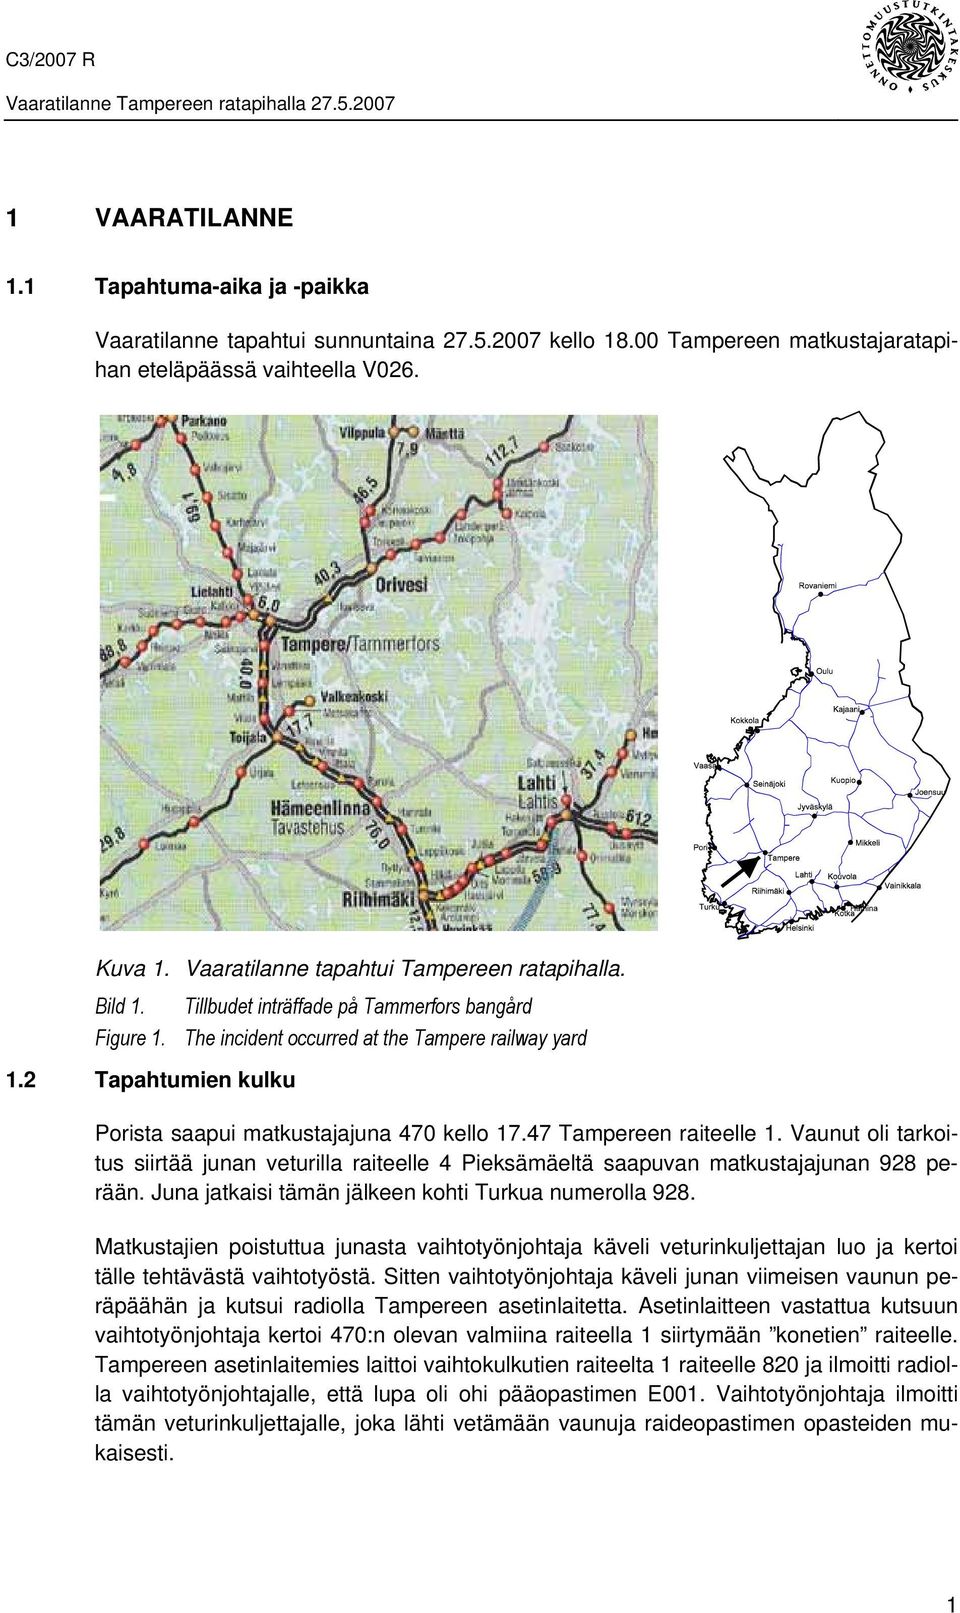 2 Tapahtumien kulku Porista saapui matkustajajuna 470 kello 17.47 Tampereen raiteelle 1. Vaunut oli tarkoitus siirtää junan veturilla raiteelle 4 Pieksämäeltä saapuvan matkustajajunan 928 perään.